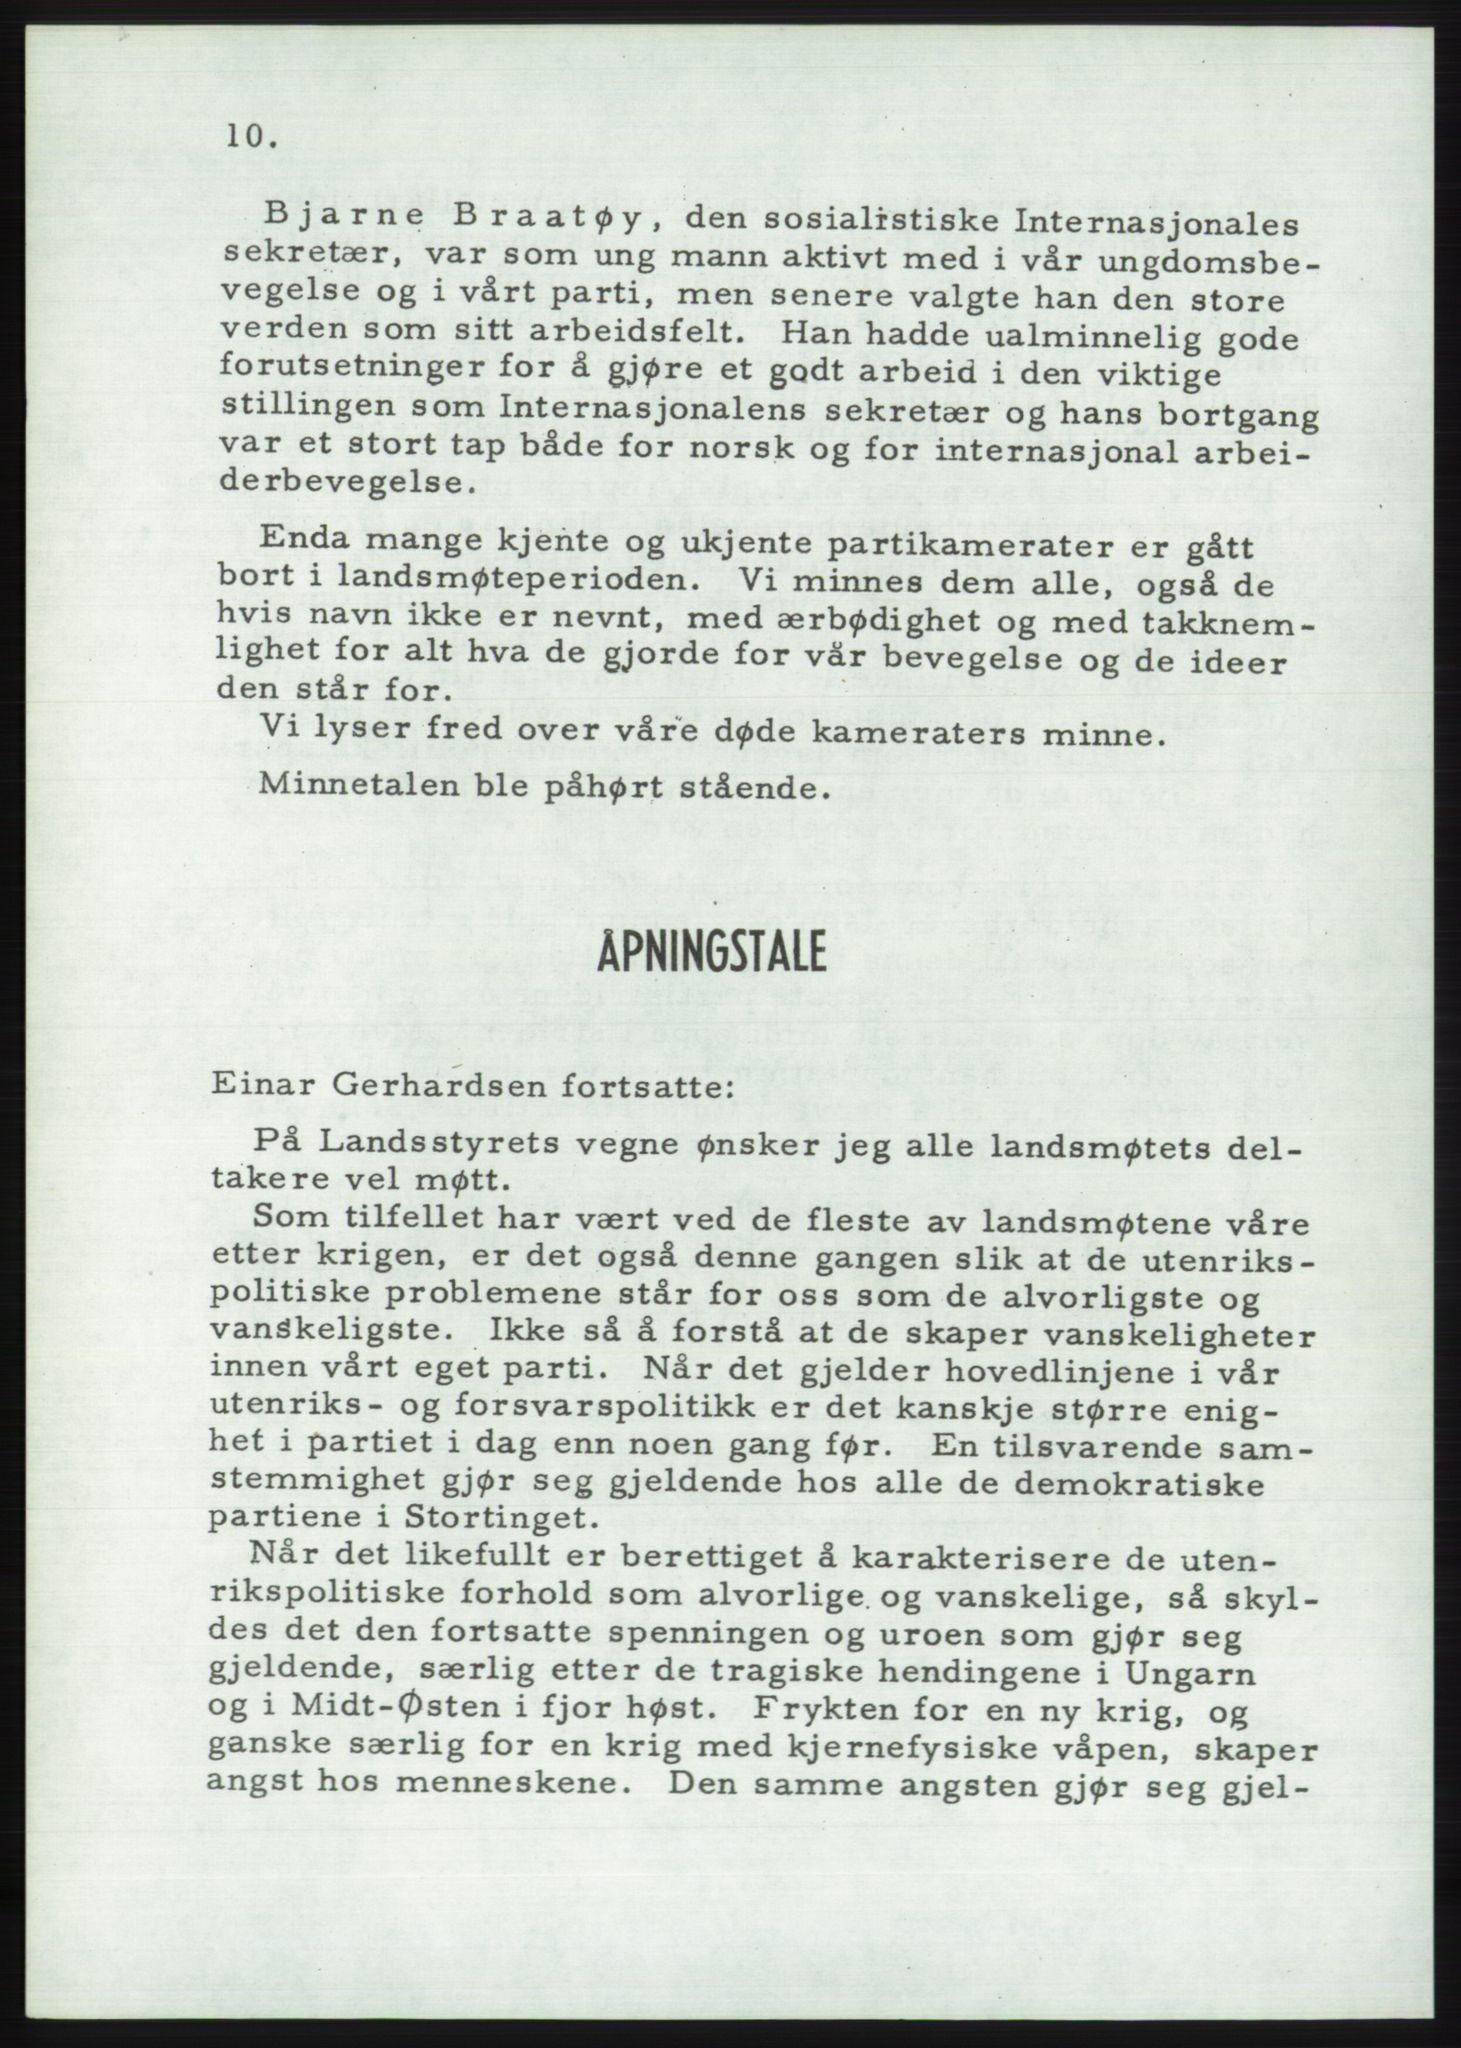 Det norske Arbeiderparti - publikasjoner, AAB/-/-/-: Protokoll over forhandlingene på det 36. ordinære landsmøte 30.-31. mai og 1. juni 1957 i Oslo, 1957, p. 10